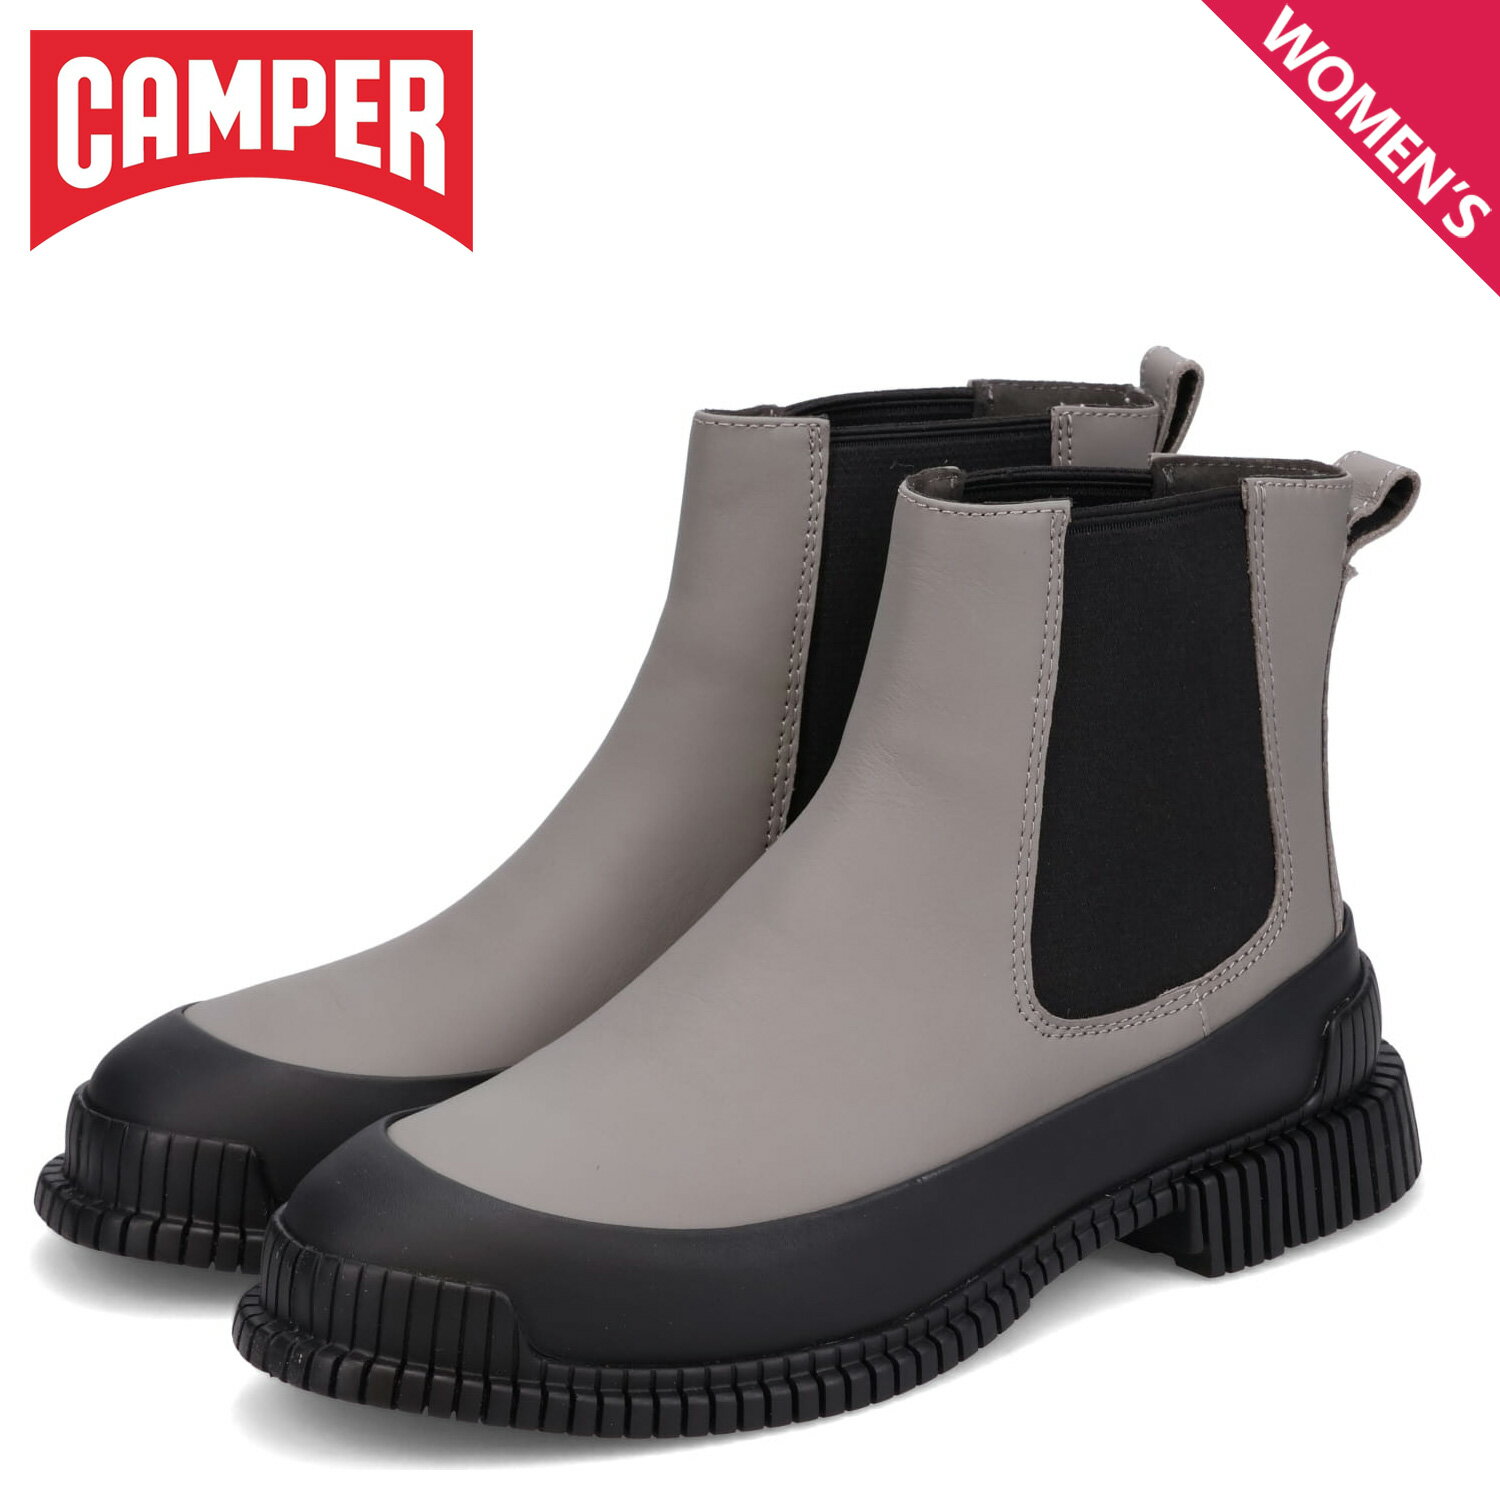 CAMPER カンペール ブーツ 靴 サイドゴアブーツ ピクス レディース PIX グレー K400304